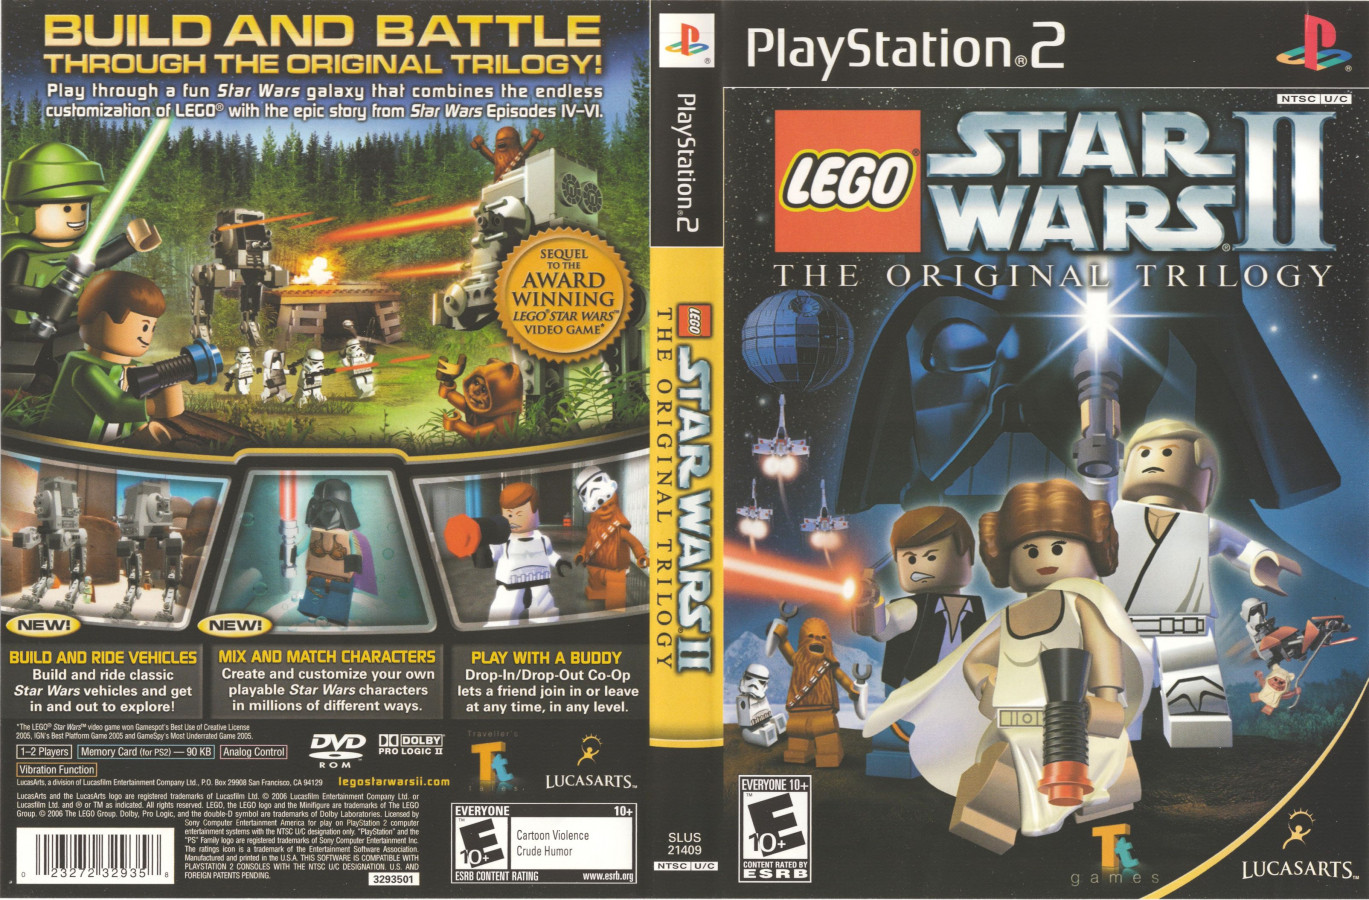 Lego Star Wars The Original Trilogy v1.0 for PS